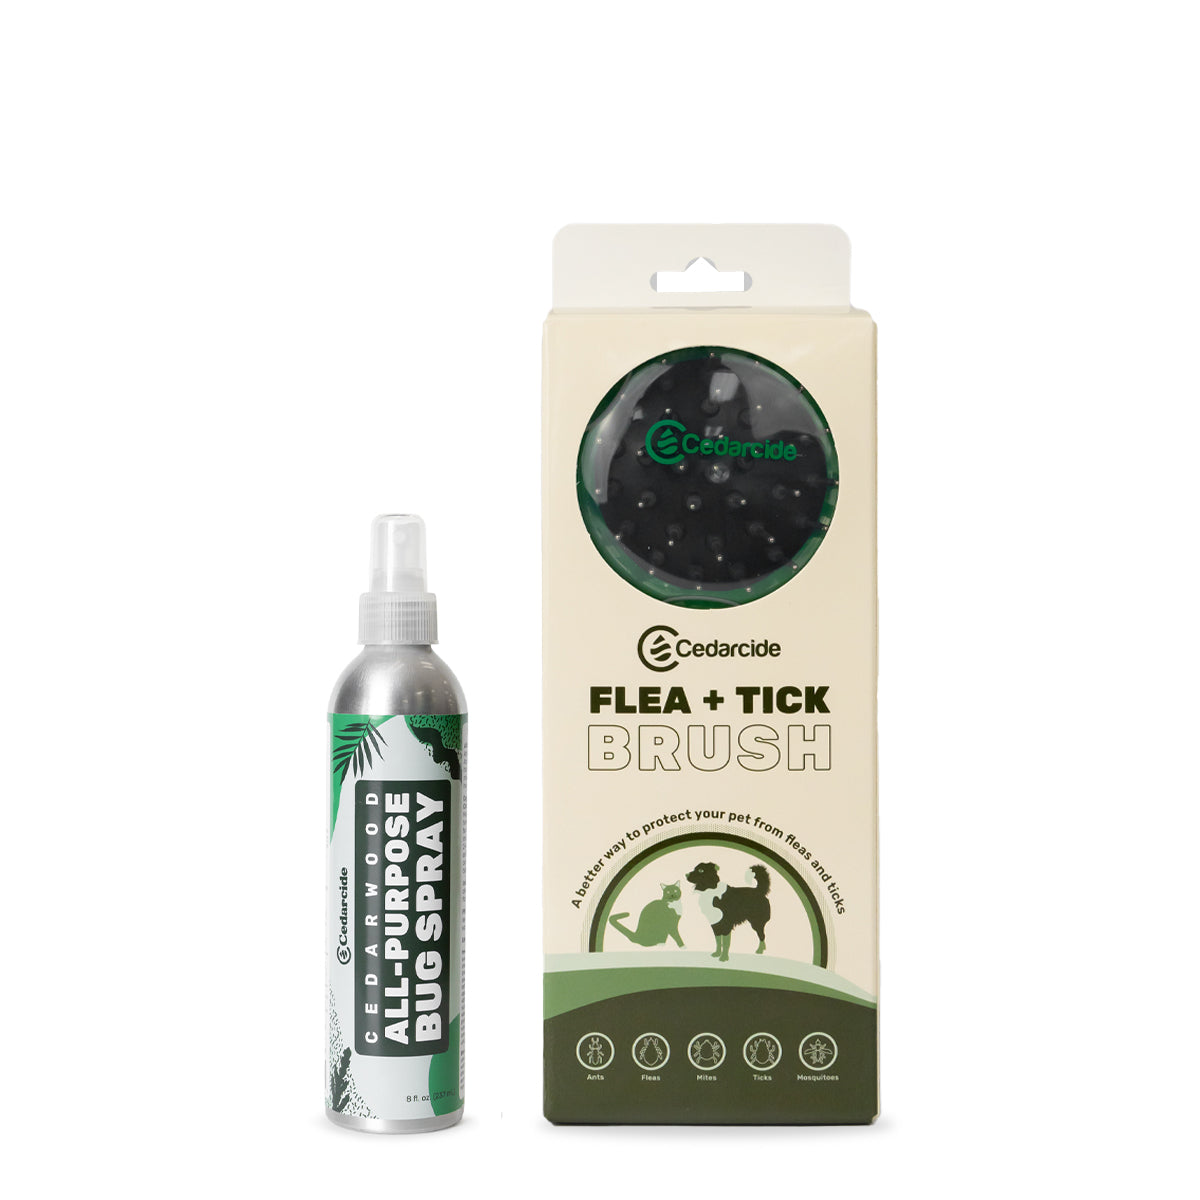 Flea & Tick Pet Protection